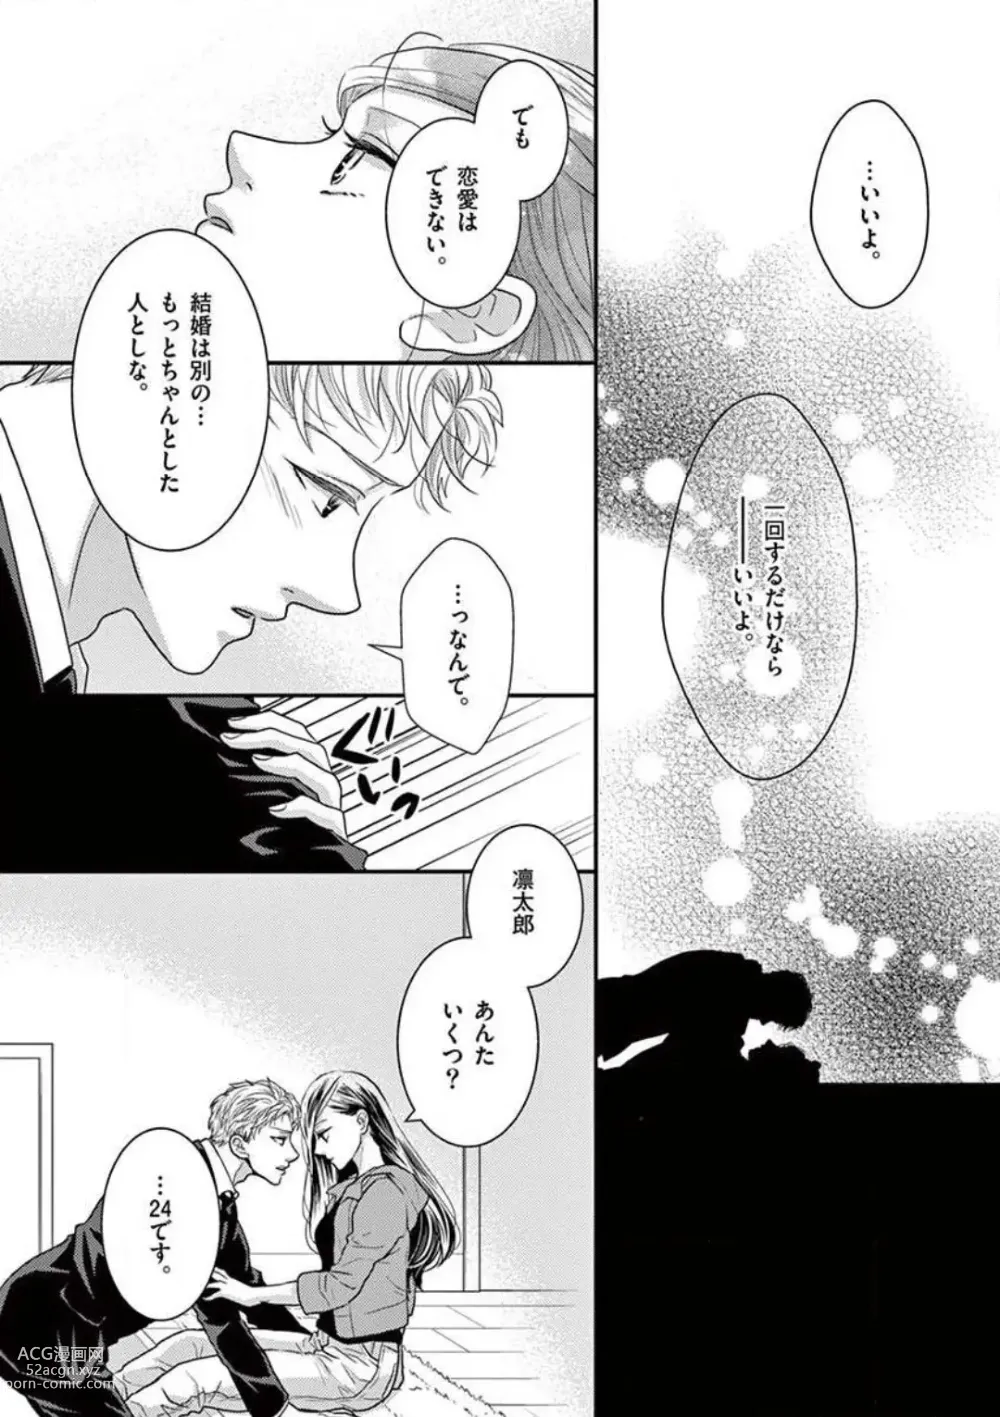 Page 13 of manga Yajū Suitchi ON!〜 Junjō Wanko wa Hageshi Sugi 〜